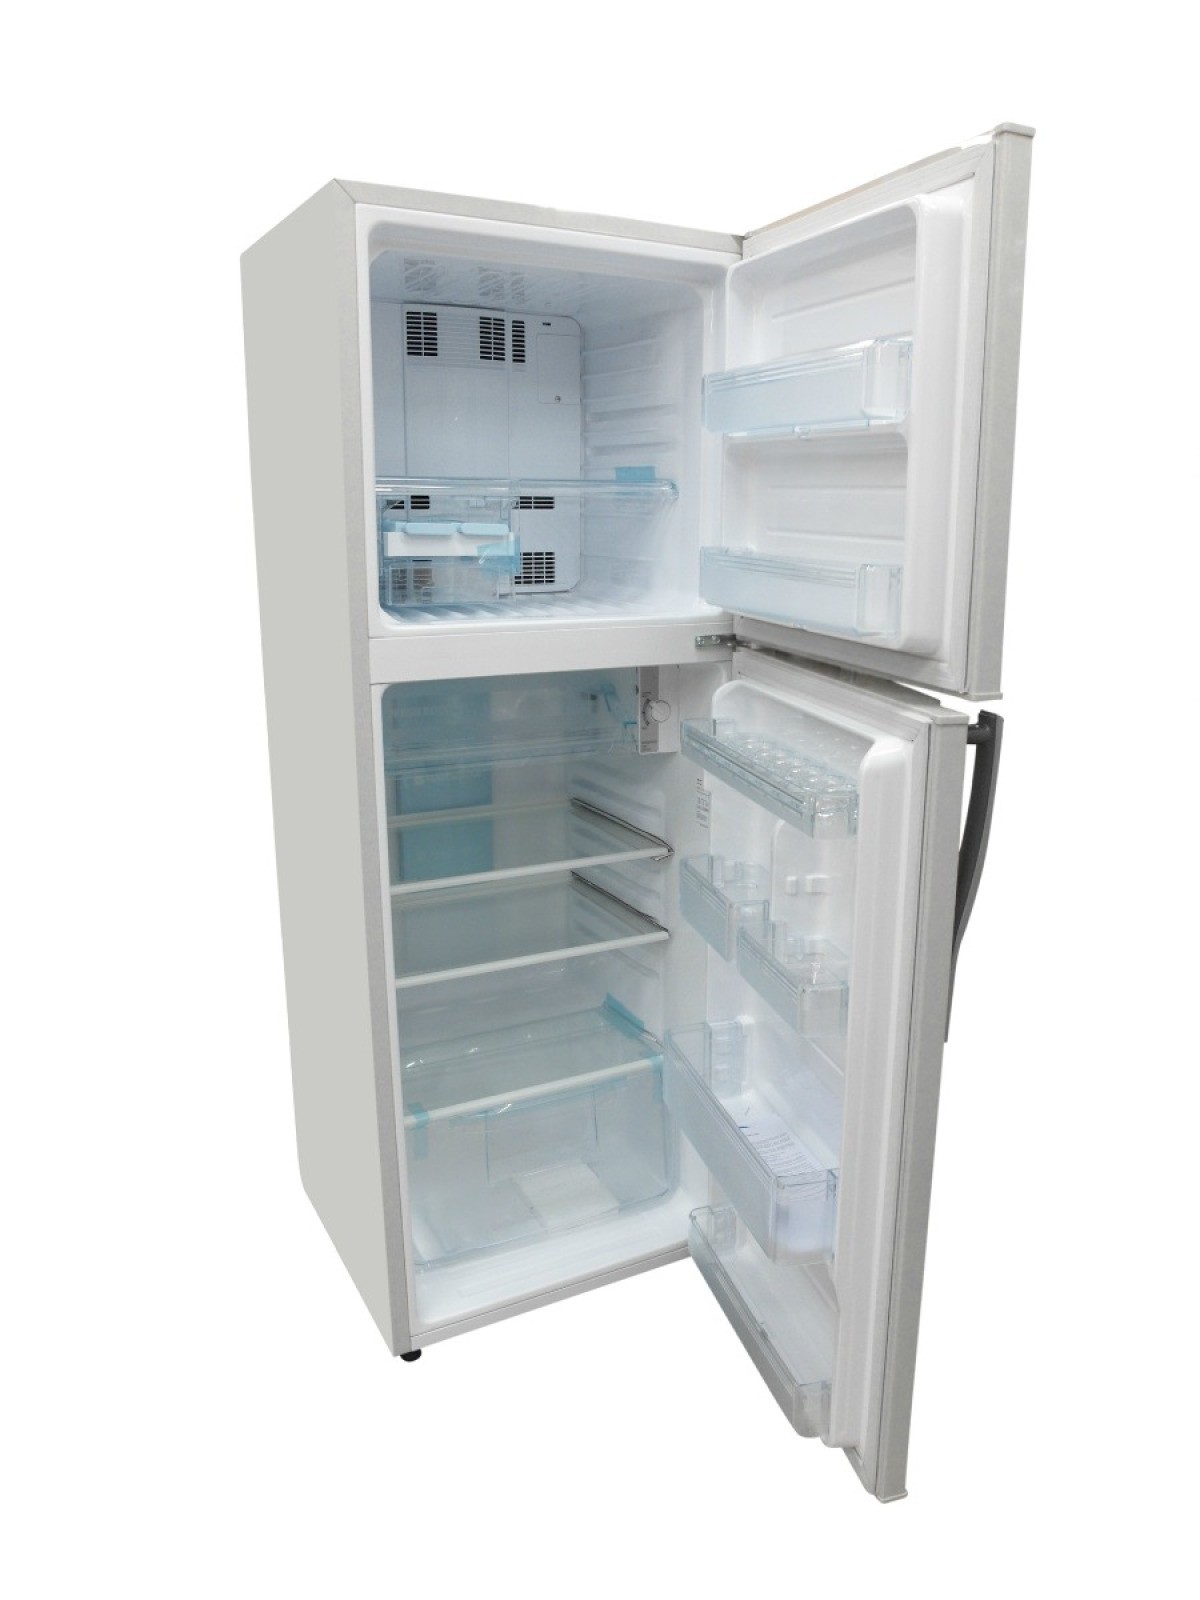 Nguyên nhán và cách khắc phục tủ lạnh chạy ngắt liên tục hiệu quả